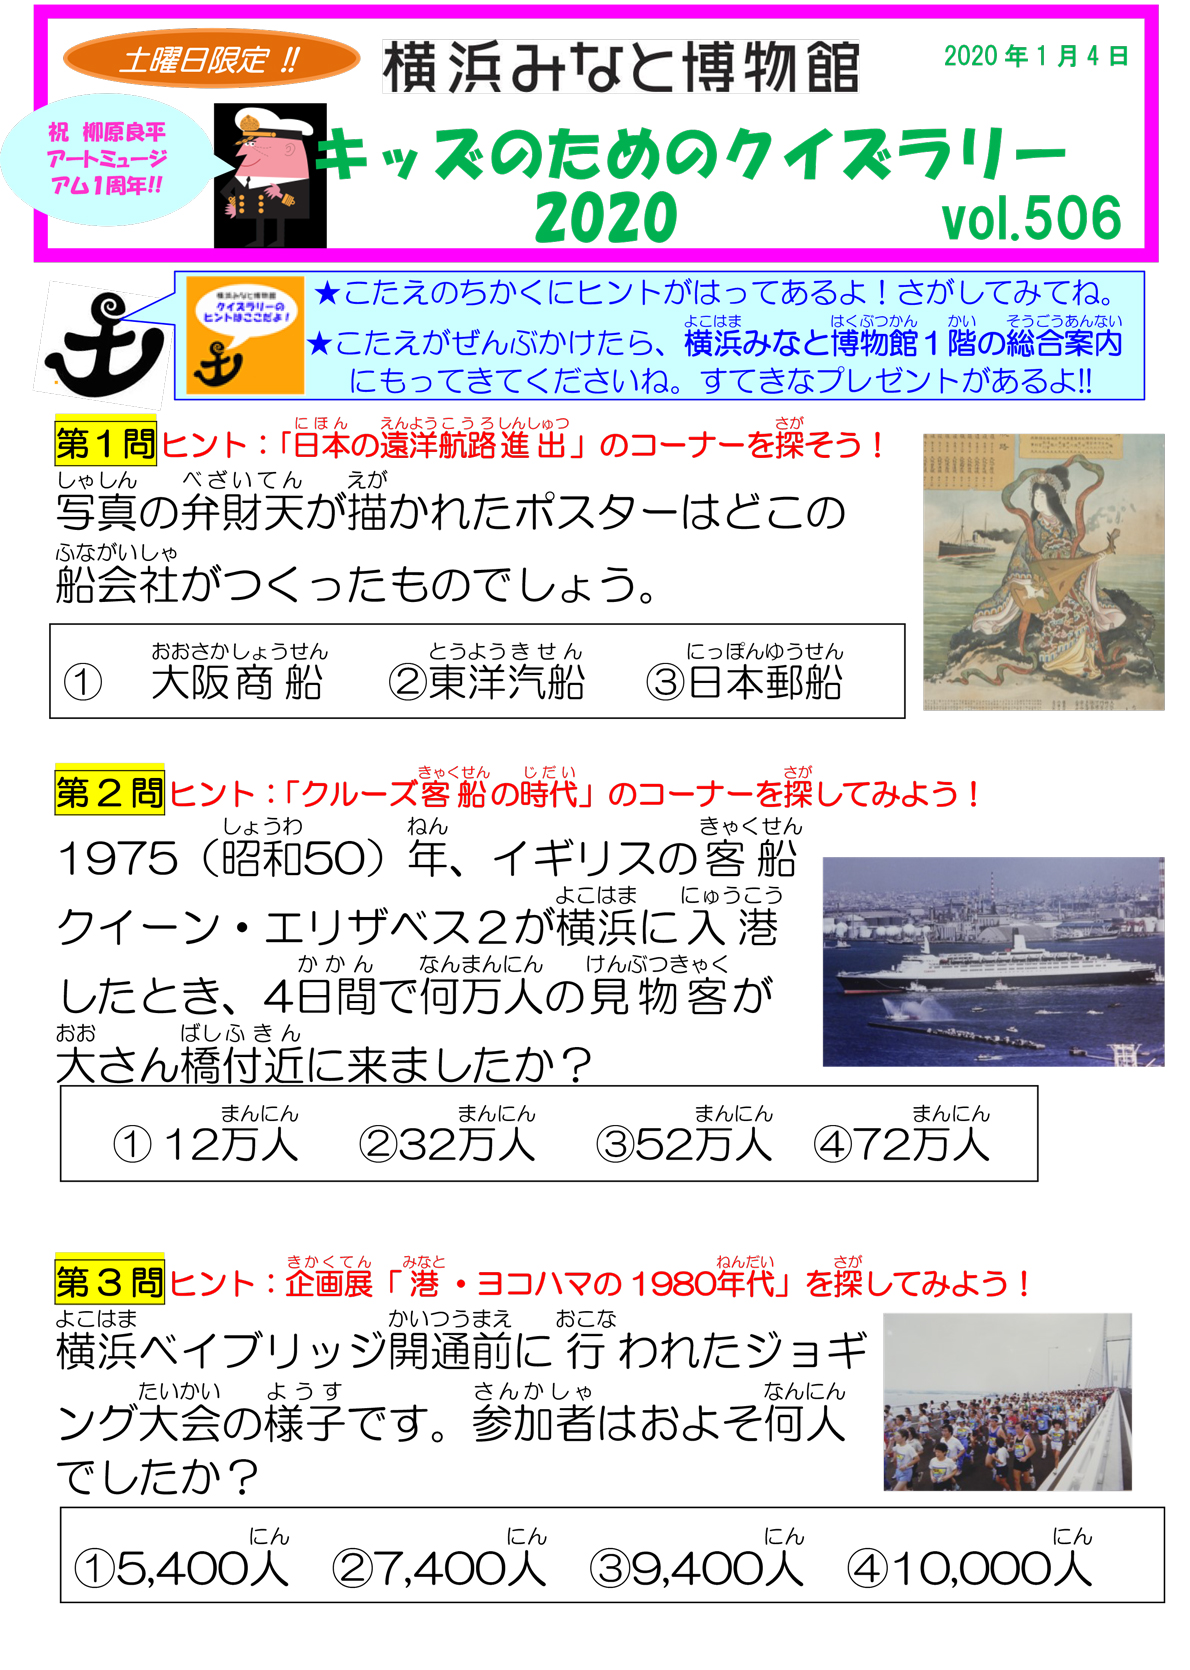 教育プログラム 帆船日本丸 横浜みなと博物館